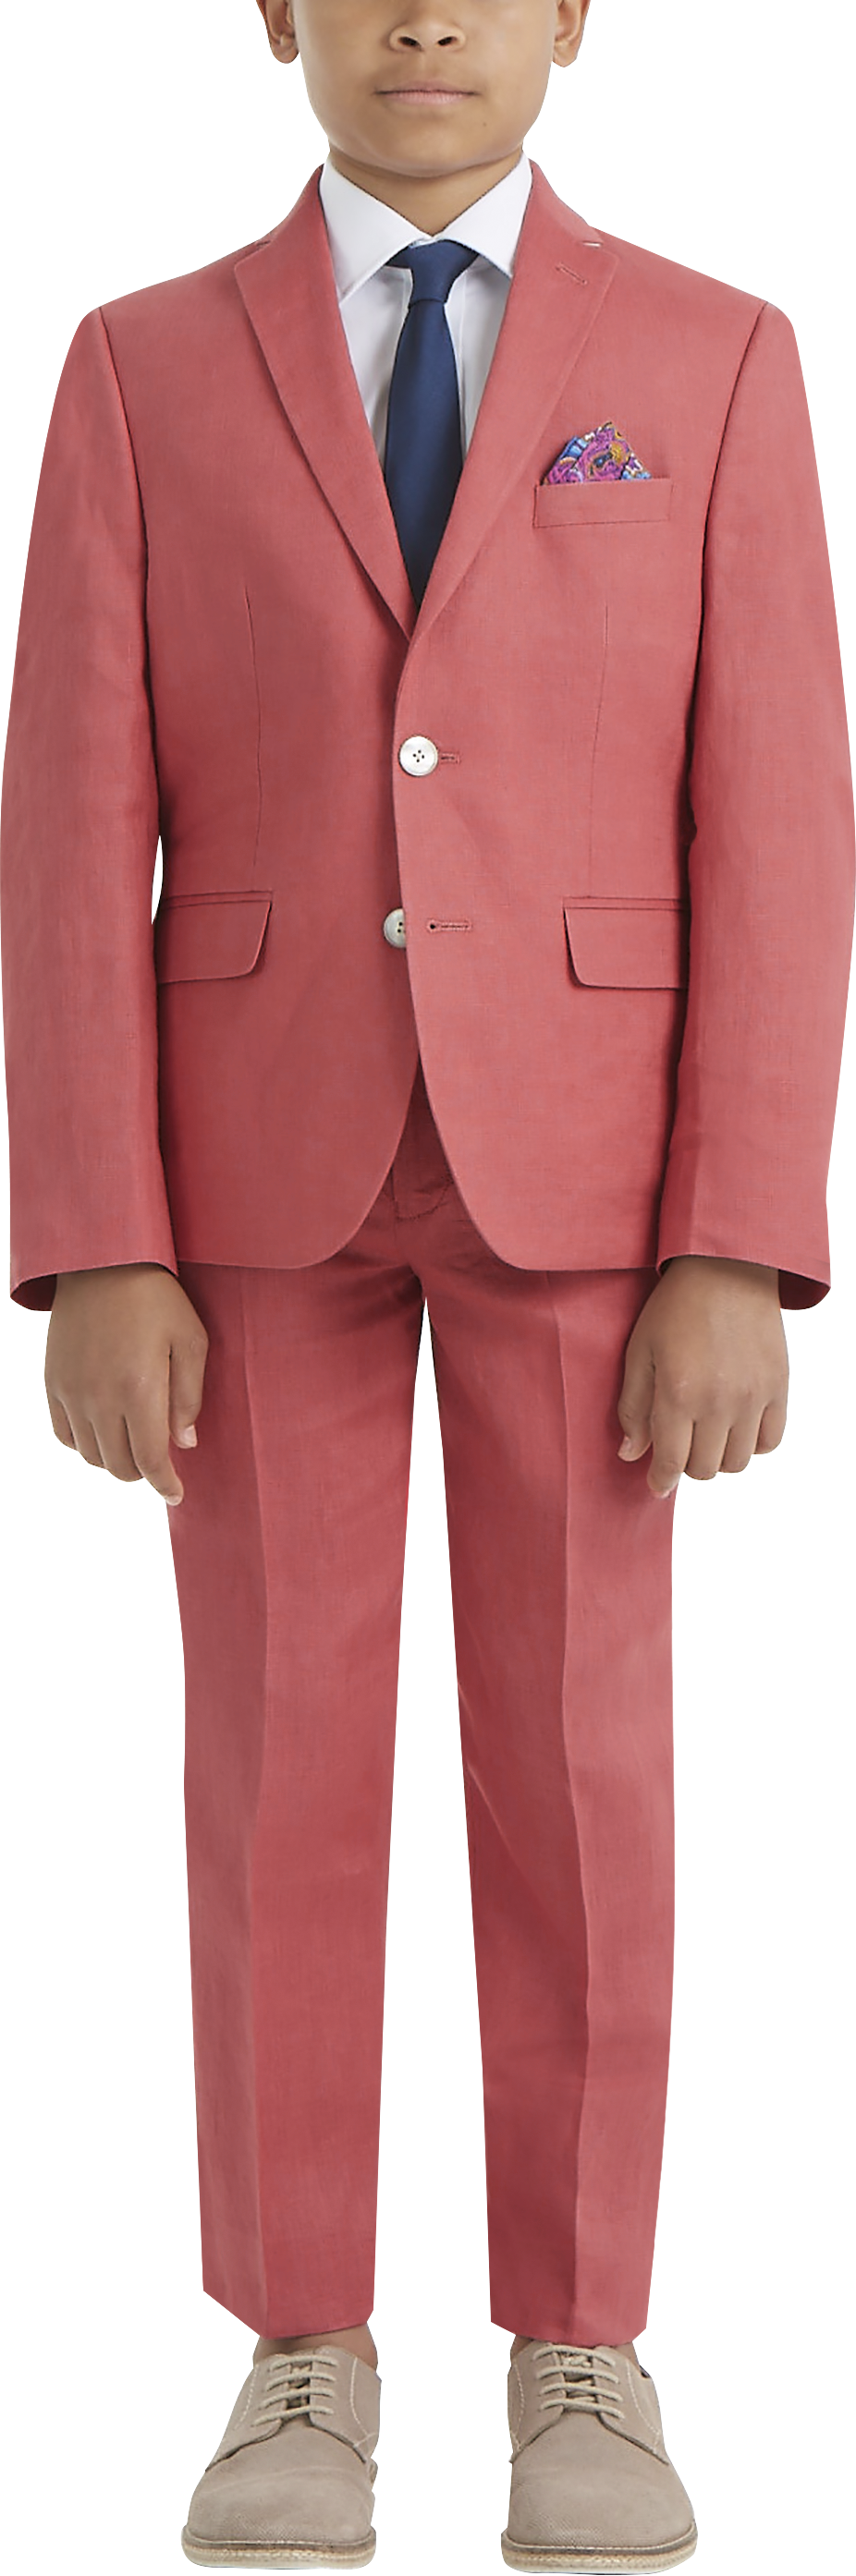 Lauren By Ralph Lauren Boys (Sizes 4-7) Suit Separates Coat, Red